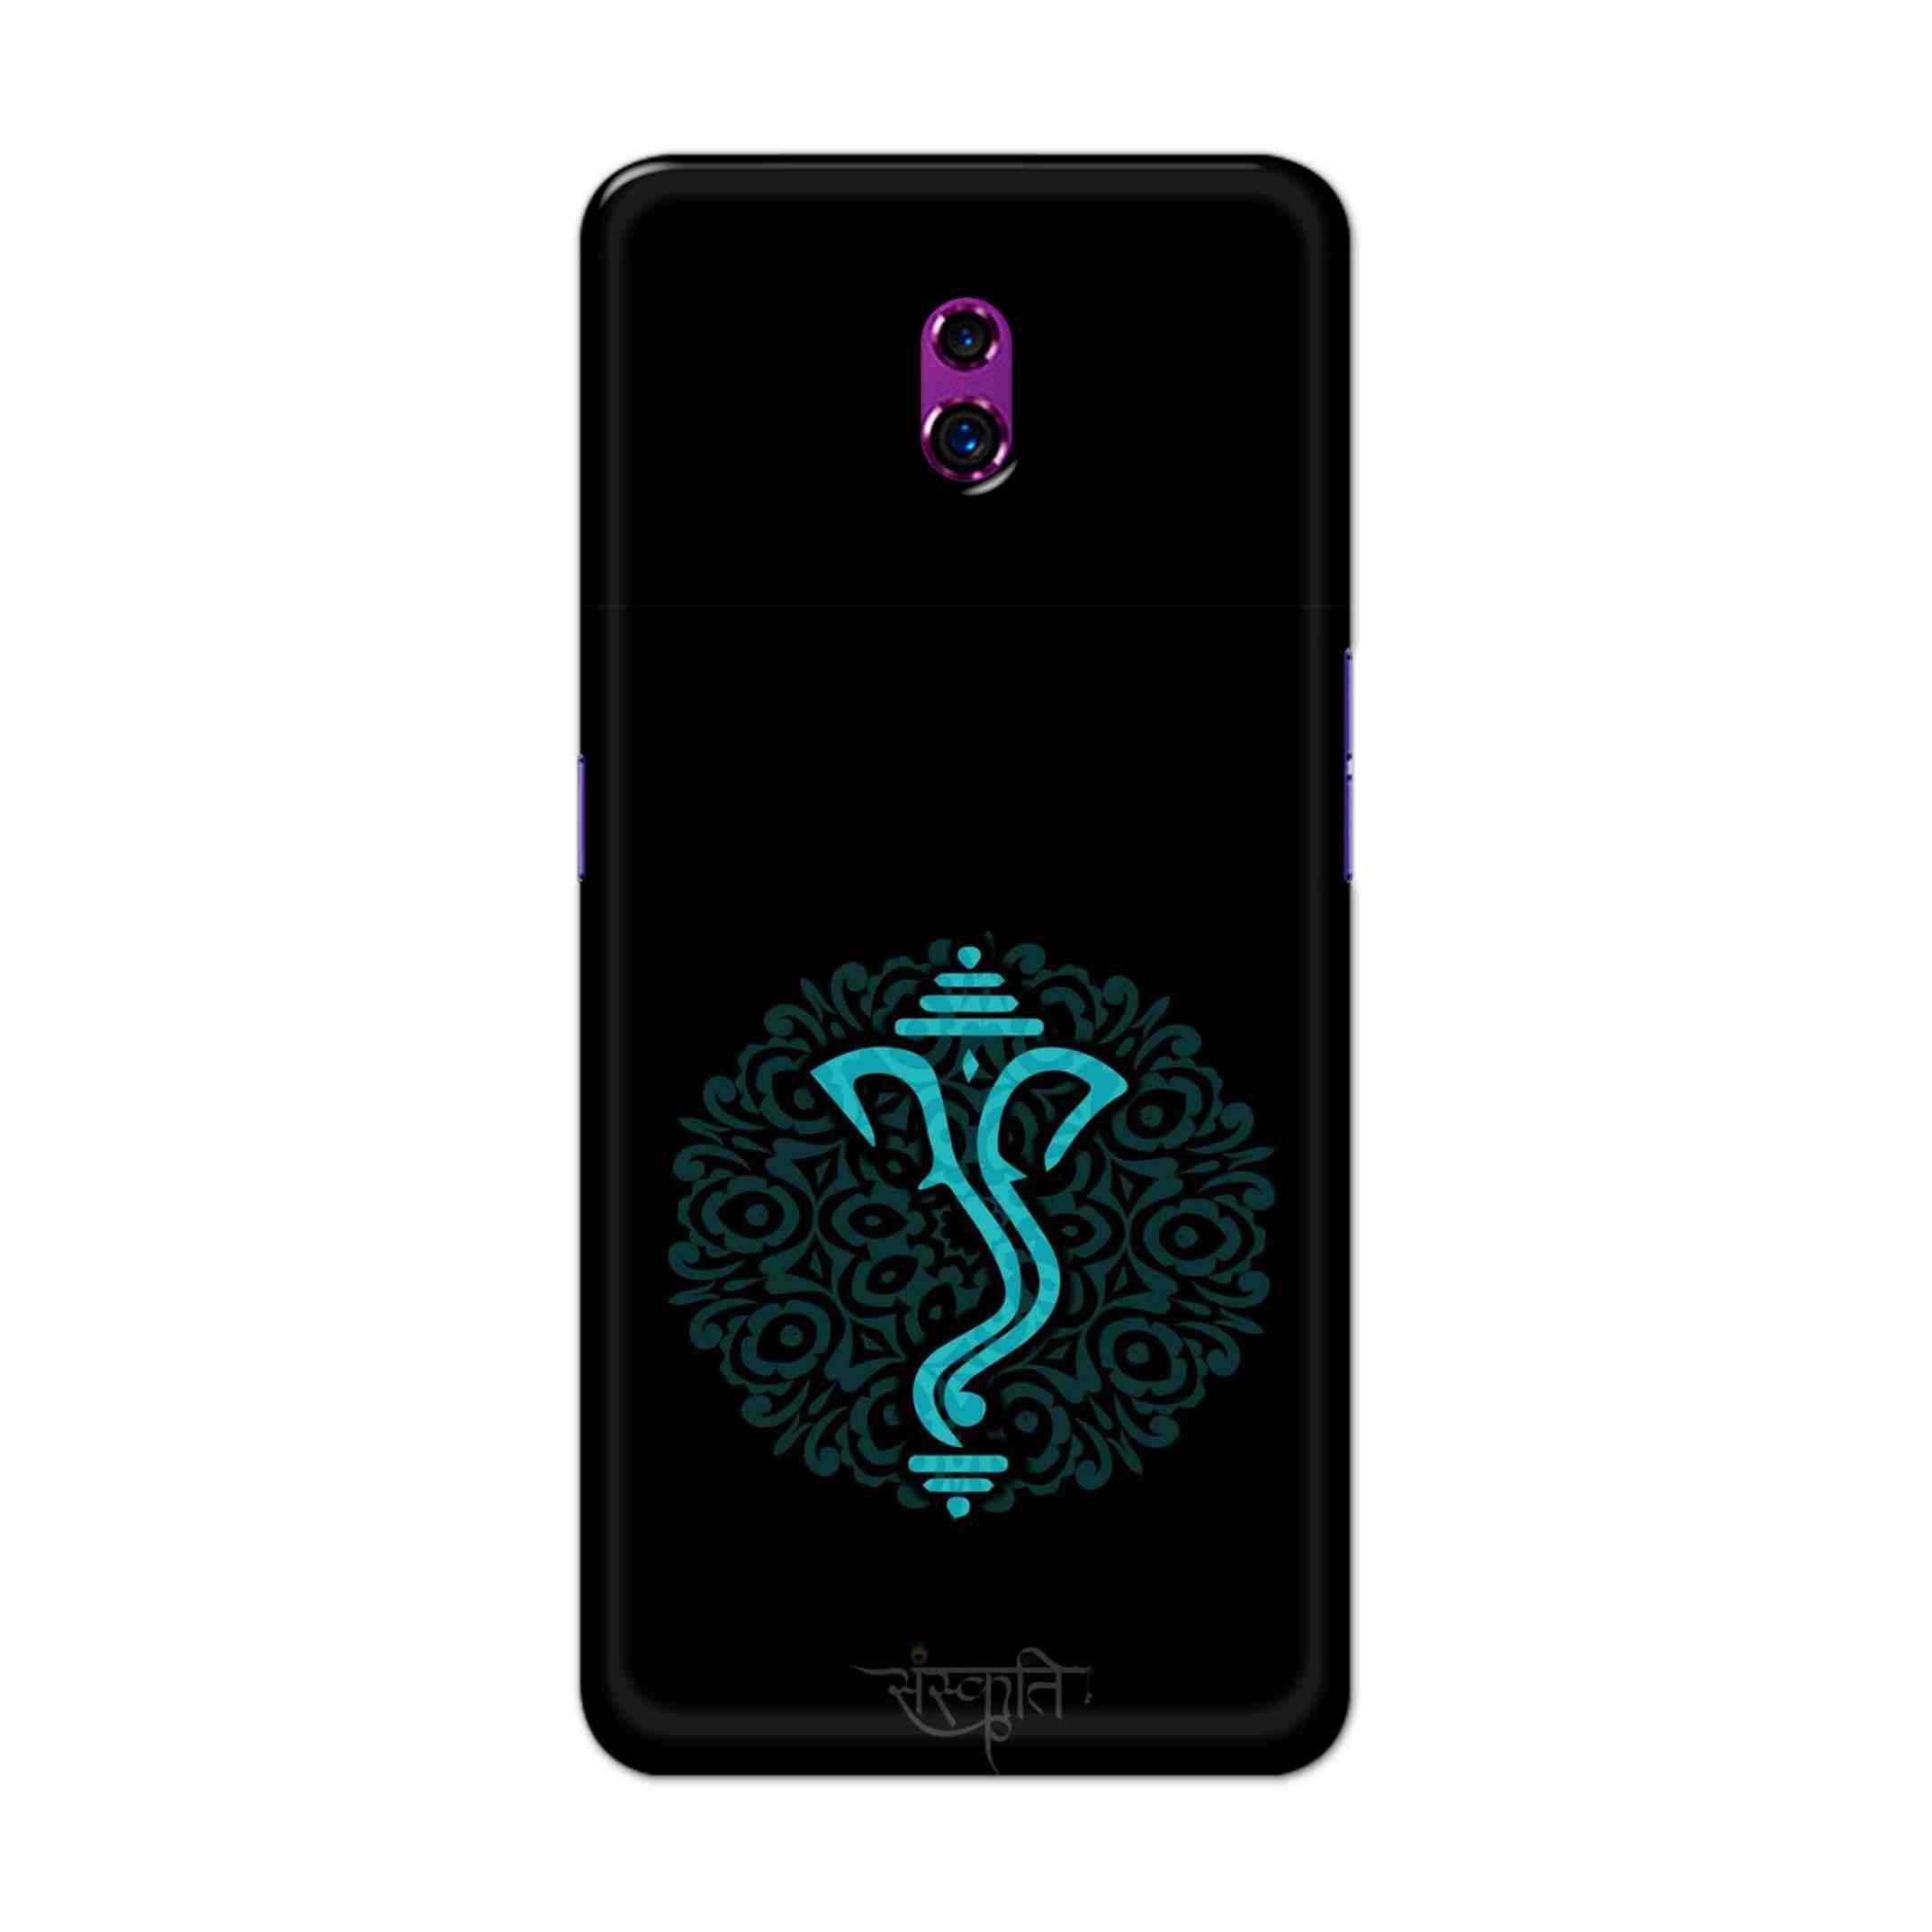 Buy Ganpati Bappa Hard Back Mobile Phone Case Cover For Oppo Reno Online